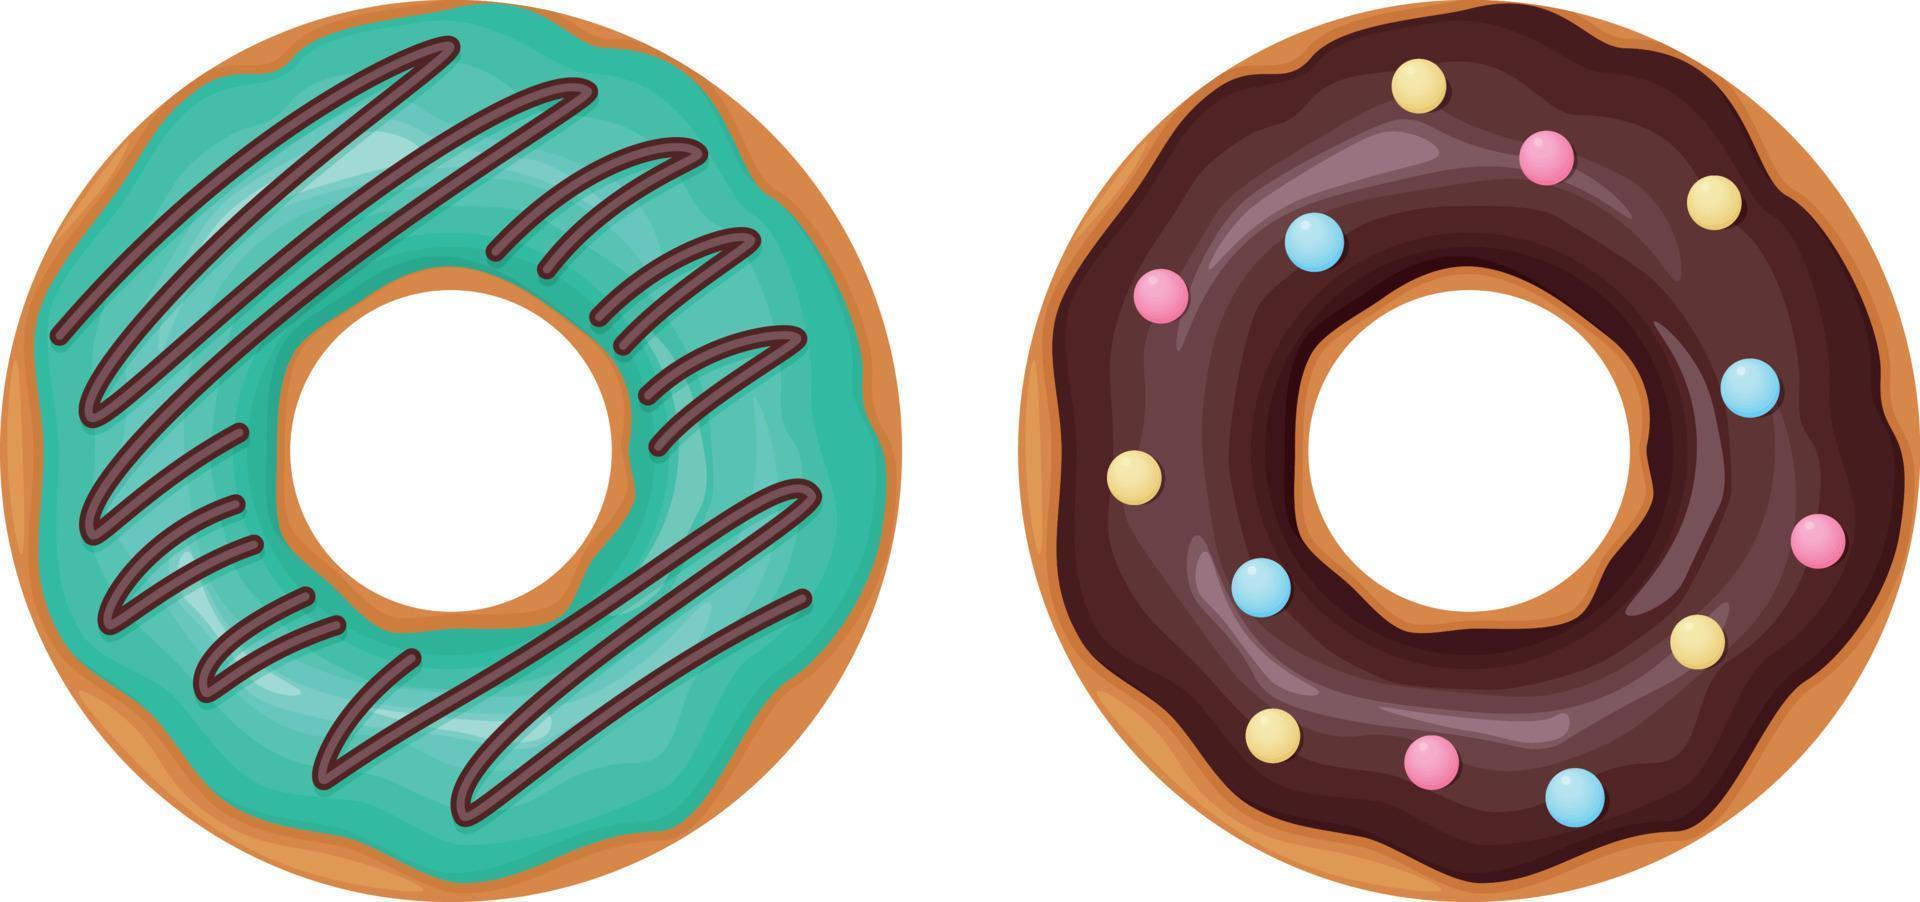 Krapfen. eine Sammlung von Donuts, die mit Zuckerguss und Schokolade dekoriert sind. süßes Dessert, Vektorillustration isoliert auf weißem Hintergrund vektor